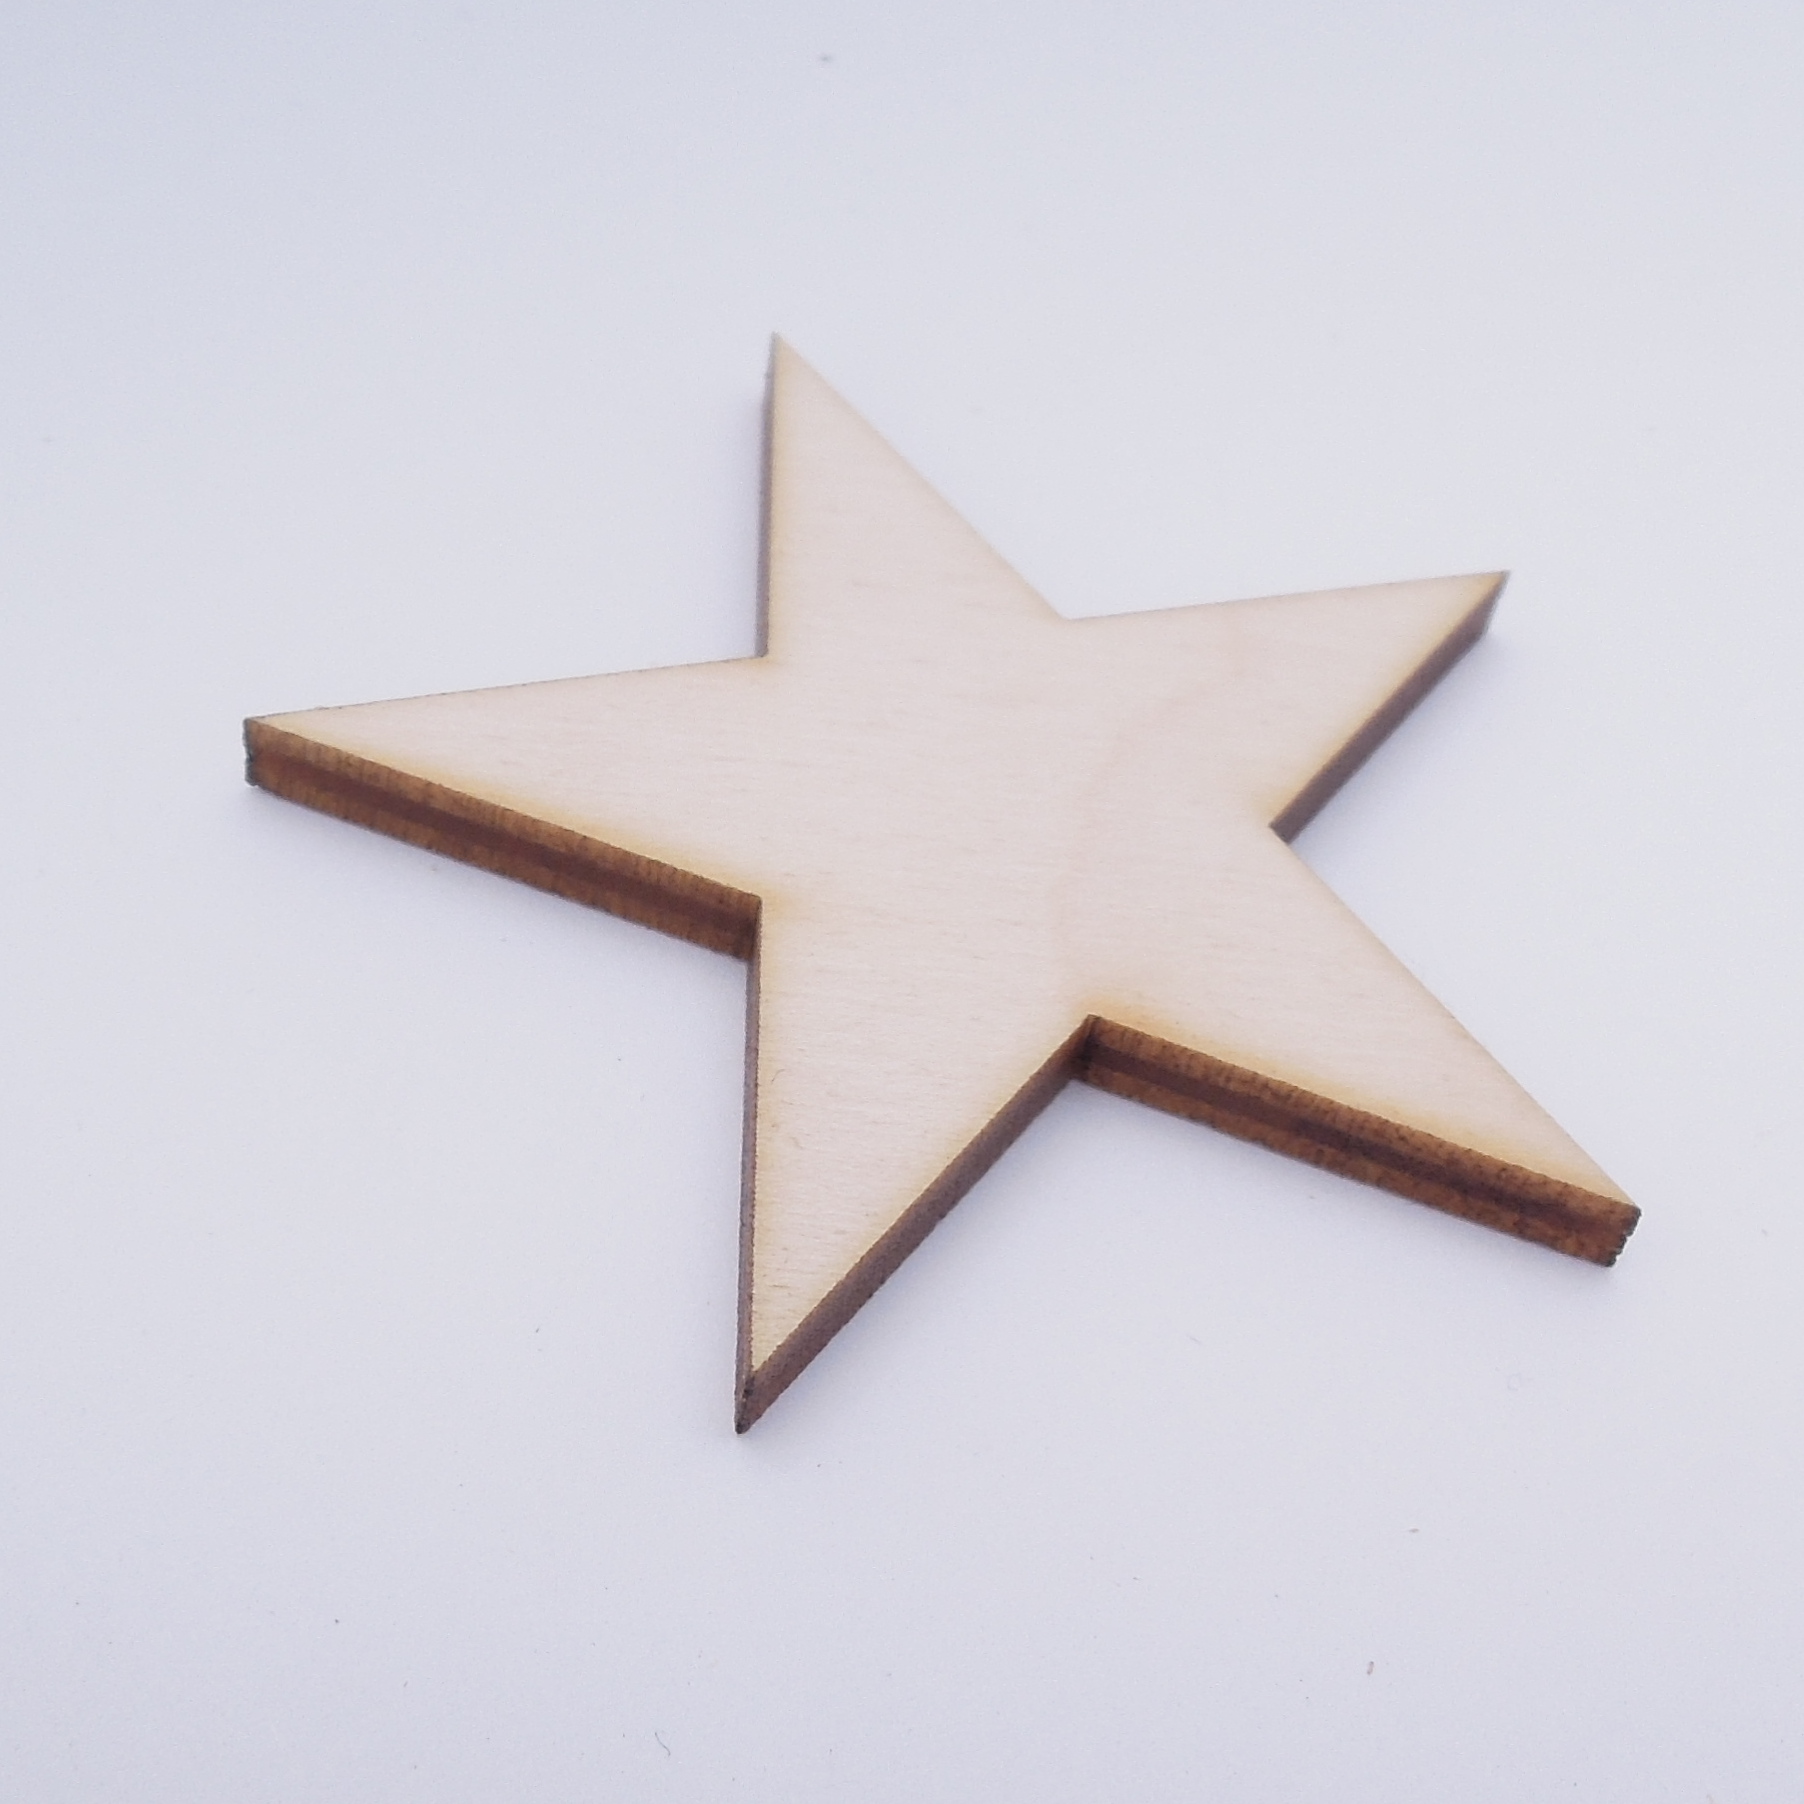 Žvaigždė - medinis gaminys, pjautas lazeriu - dekoravimui ir dažymui 